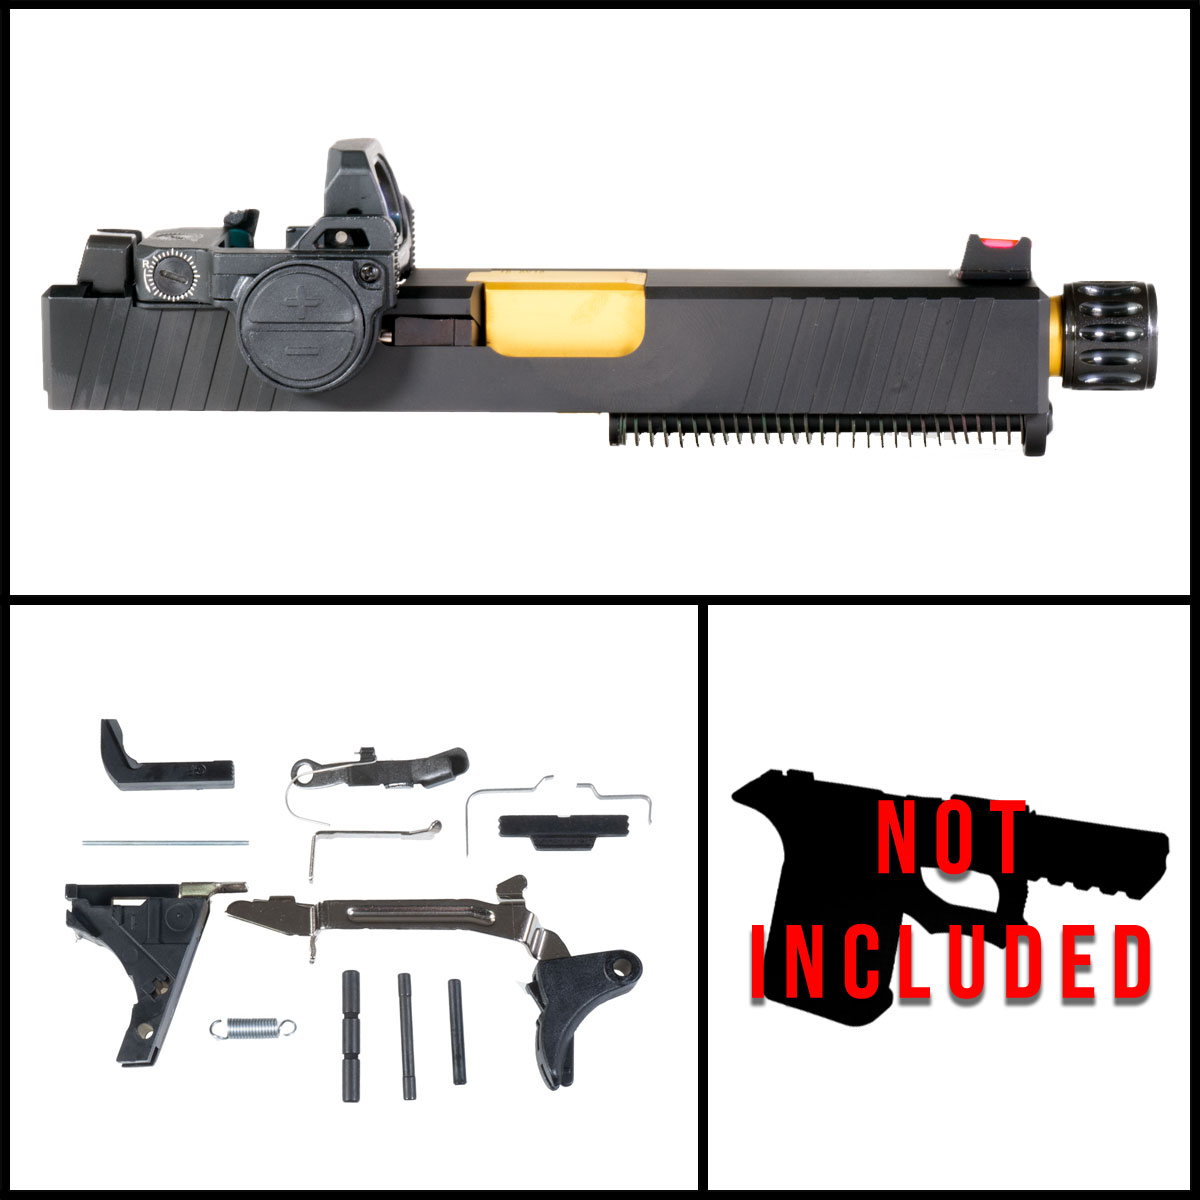 DTT 'Tempus Fugit w/ VISM FlipDot Pro' 9mm Full Pistol Build Kit (Everything Minus Frame) - Glock 19 Gen 1-3 Compatible